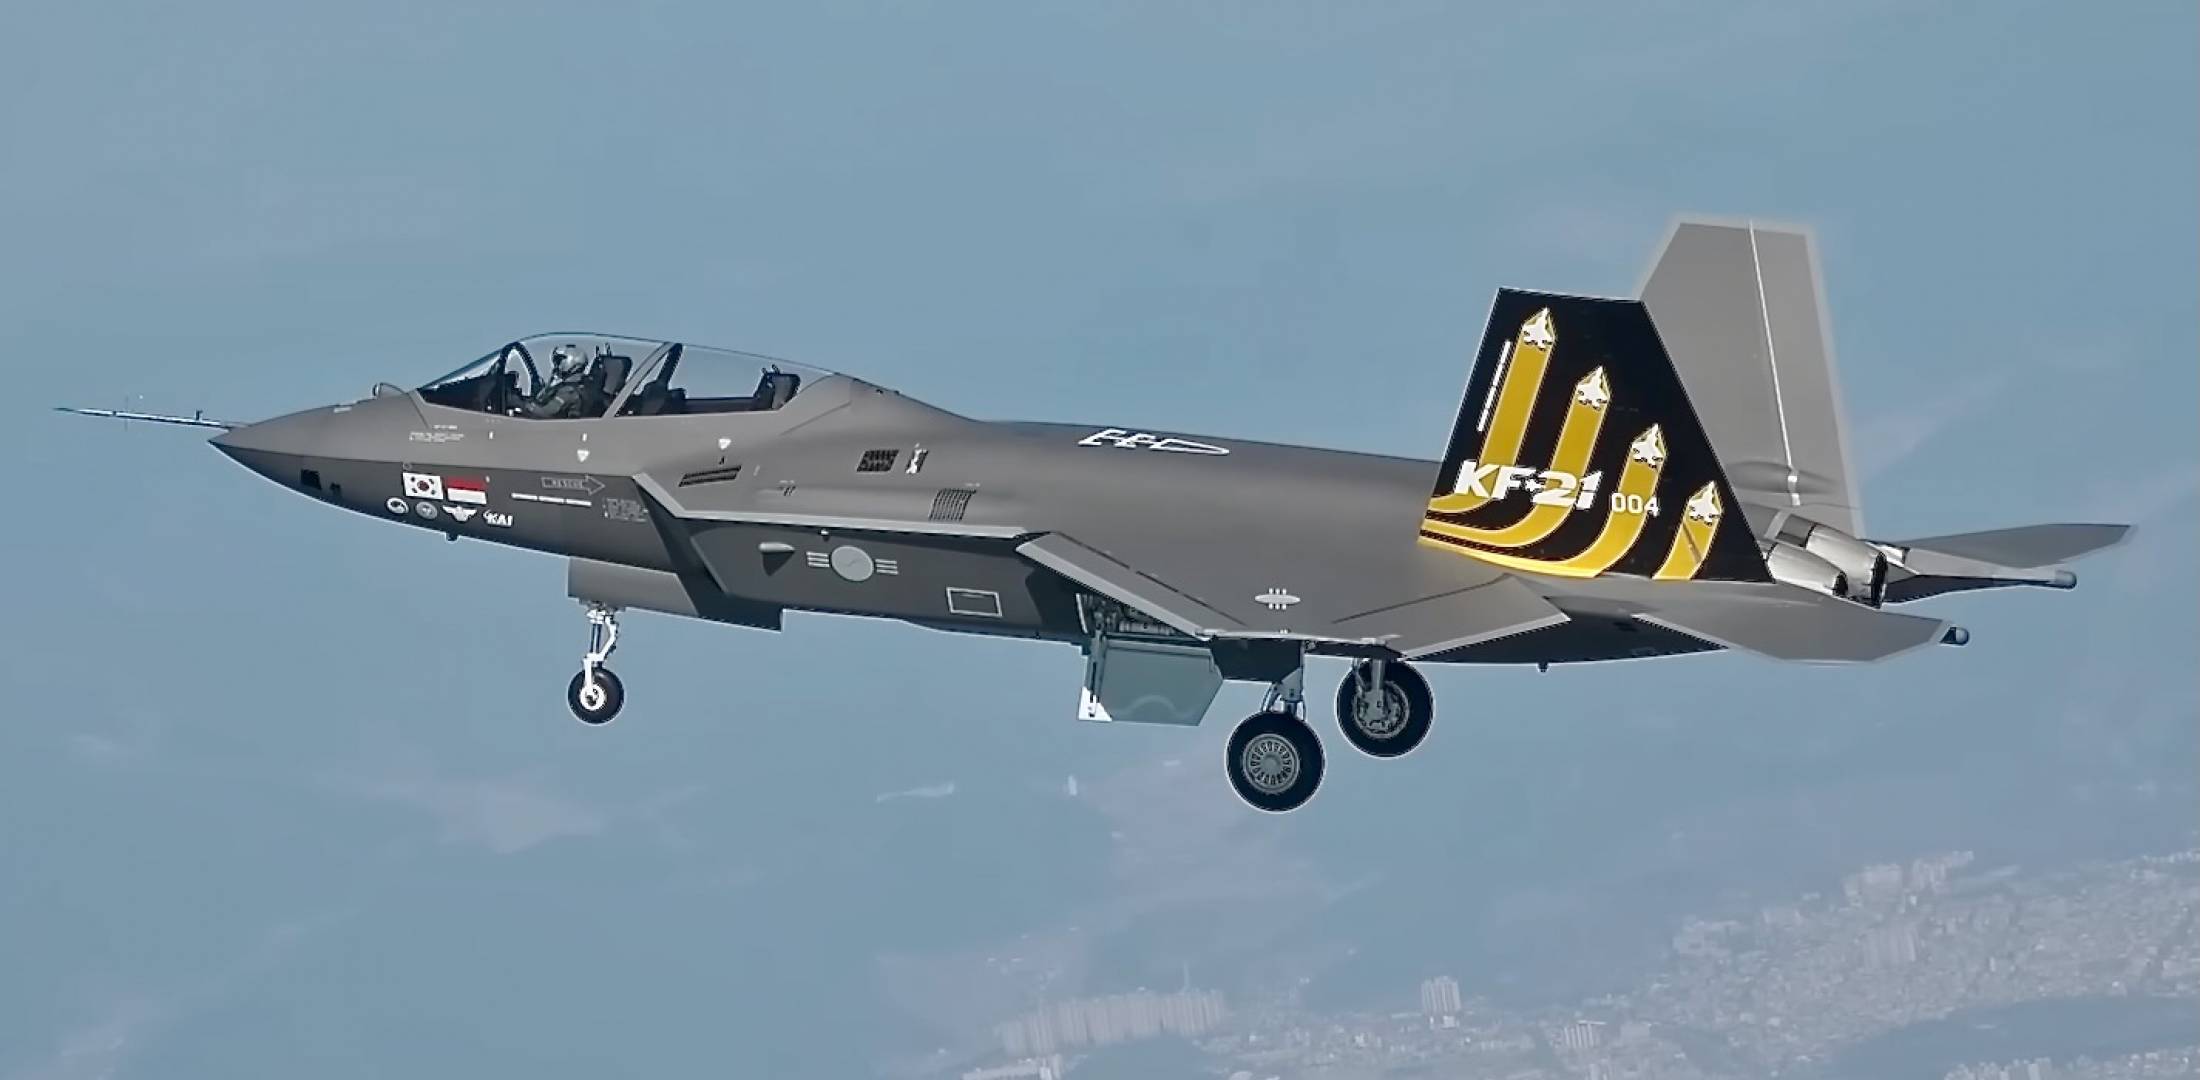 Myśliwiec KF-21 pomyślnie przeszedł wstępną ocenę zdolności operacyjnych